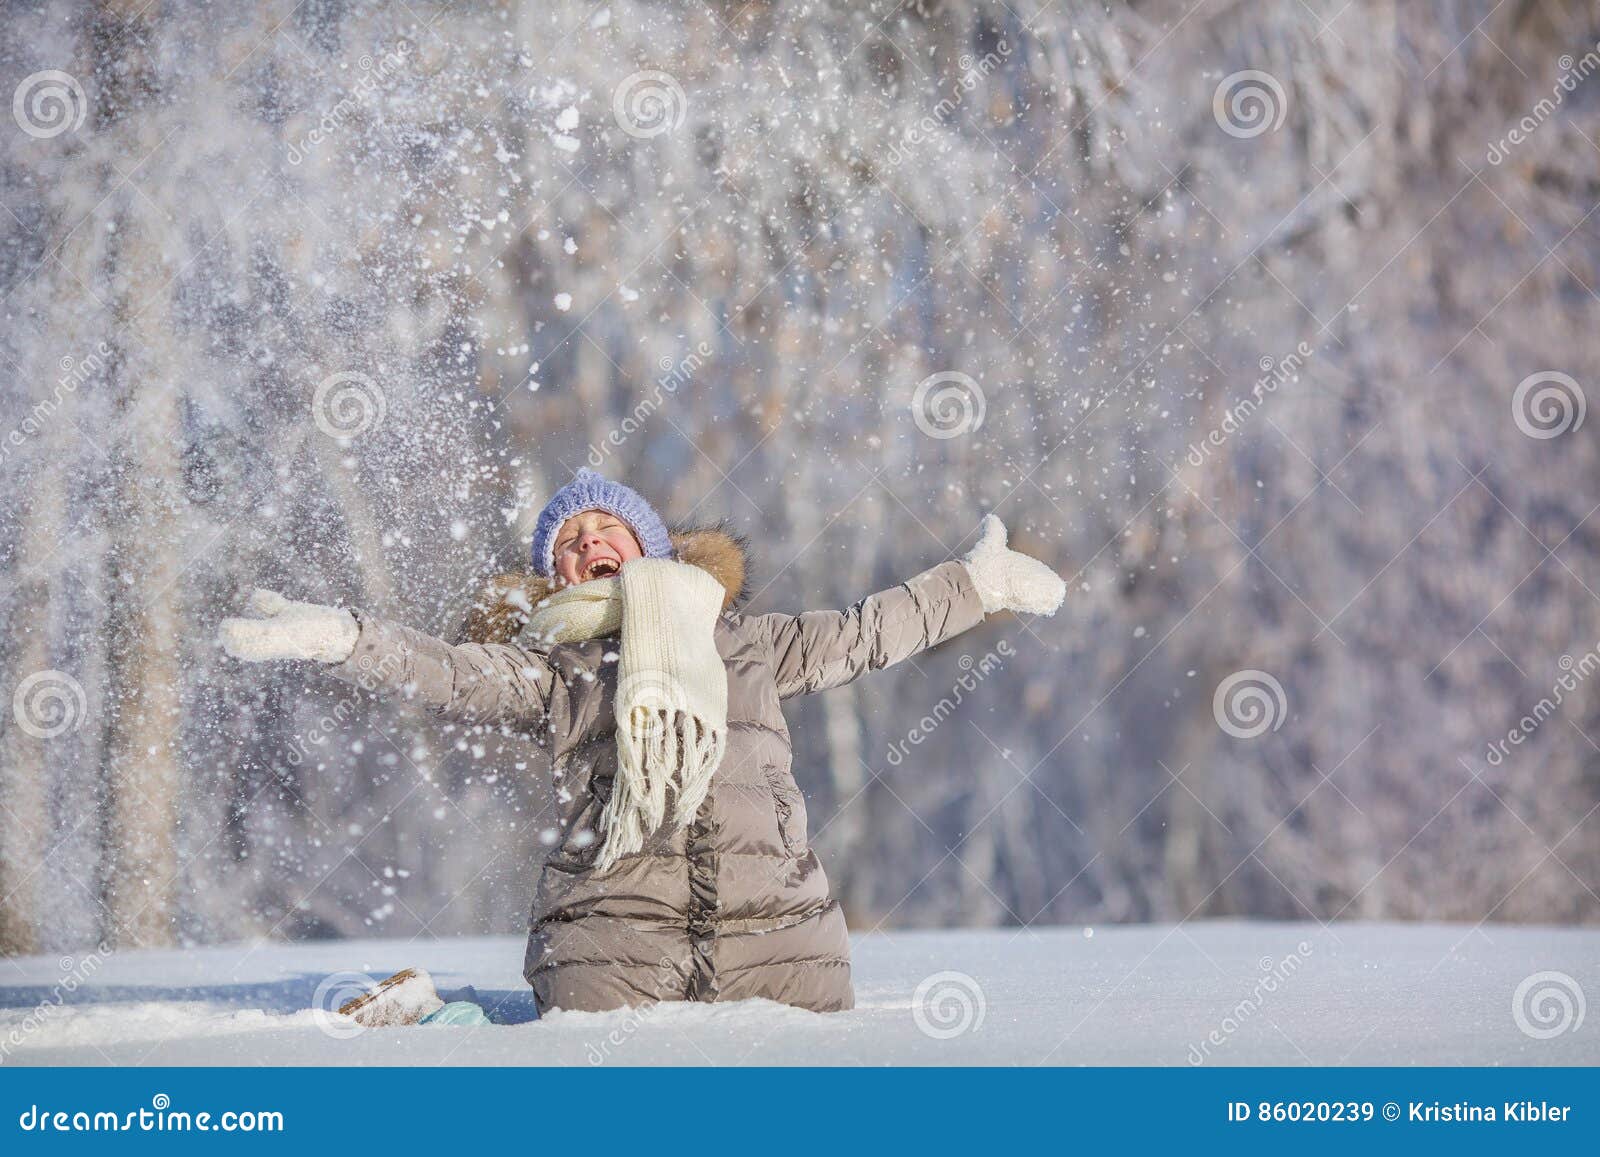 В окно кидают снежки. Подбрасывает снег. Девушка бросает снежок. Подбрасывать снег вверх девочка. Ребенок подбрасывает снег.